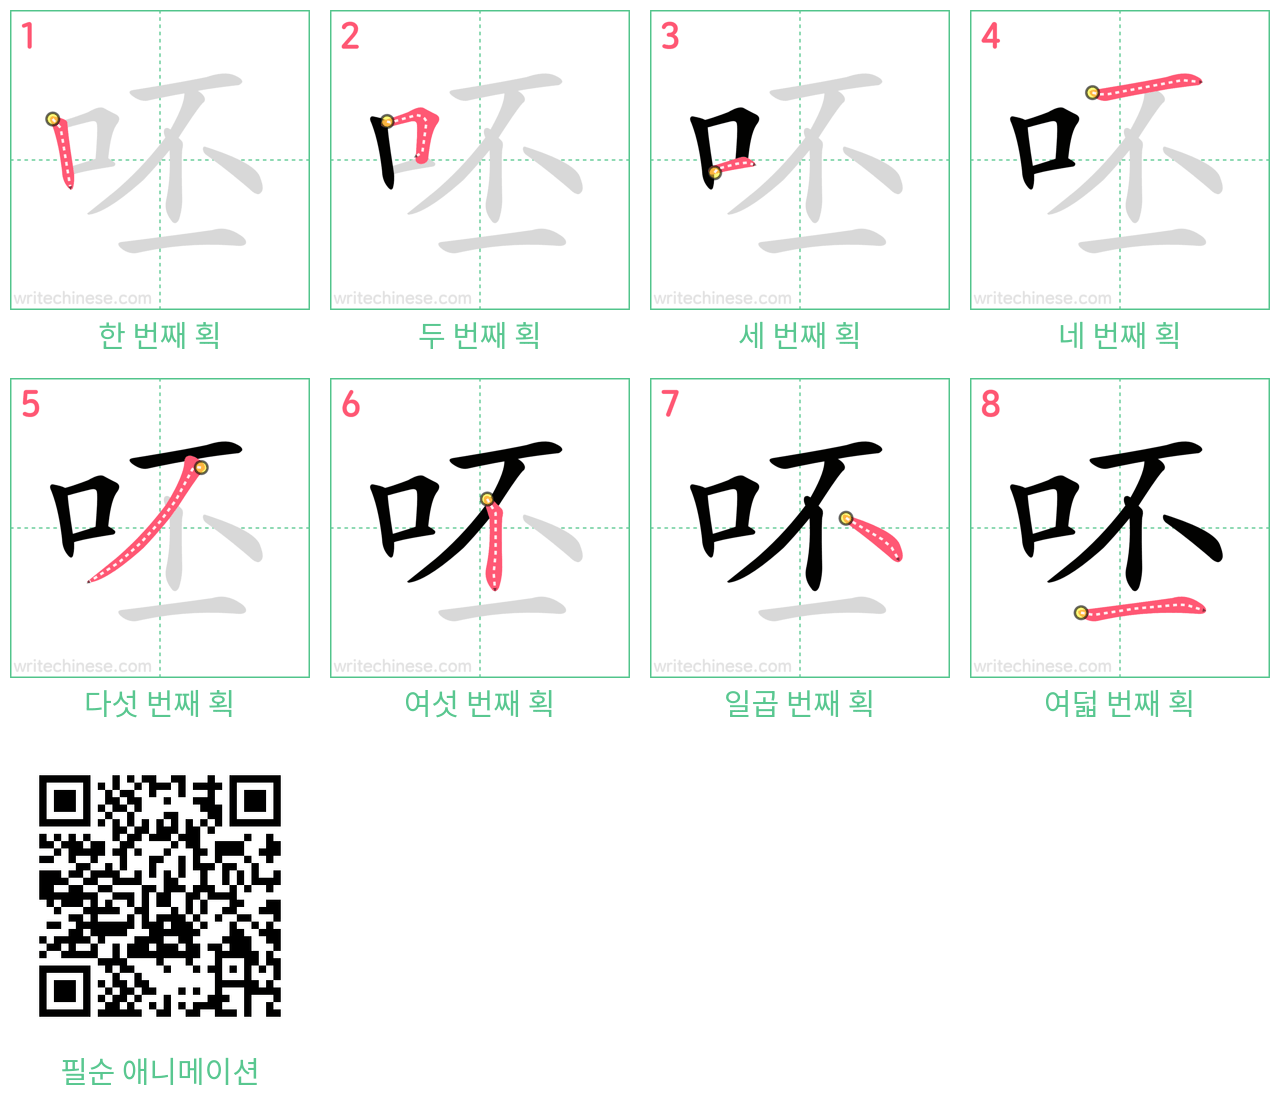 呸 step-by-step stroke order diagrams